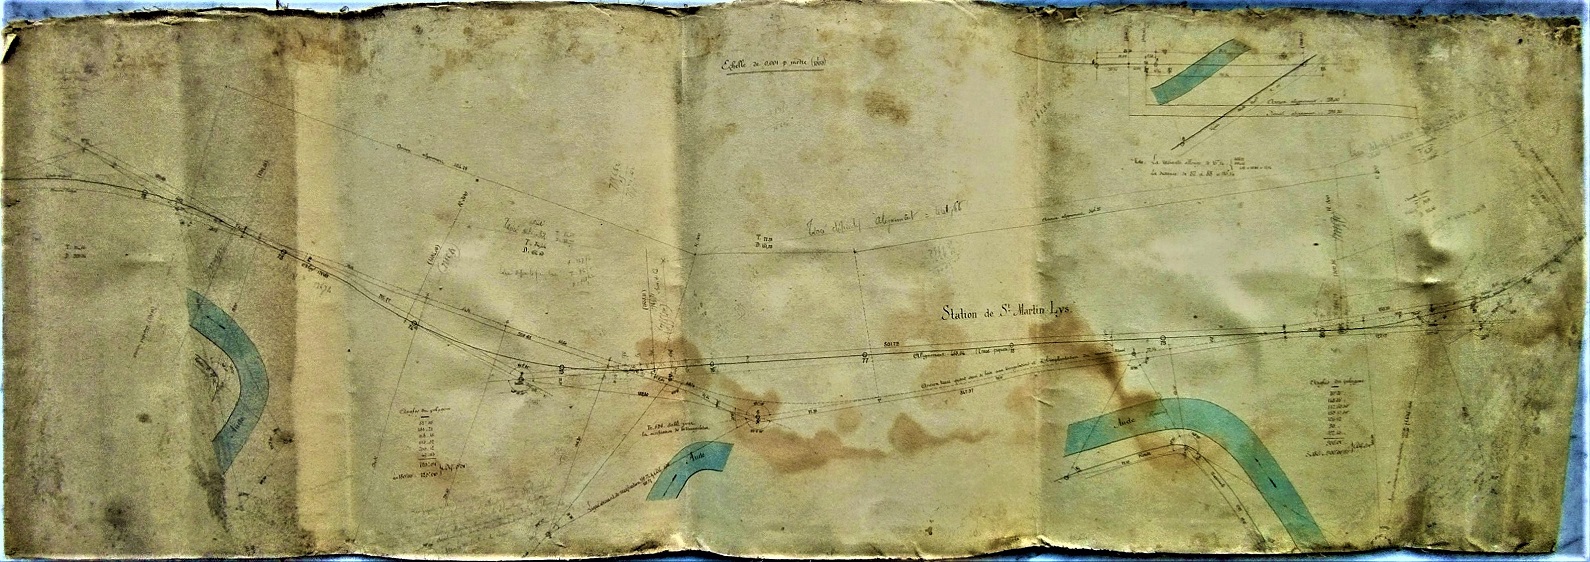 Plan sur la Station de Saint Martin Lys - général